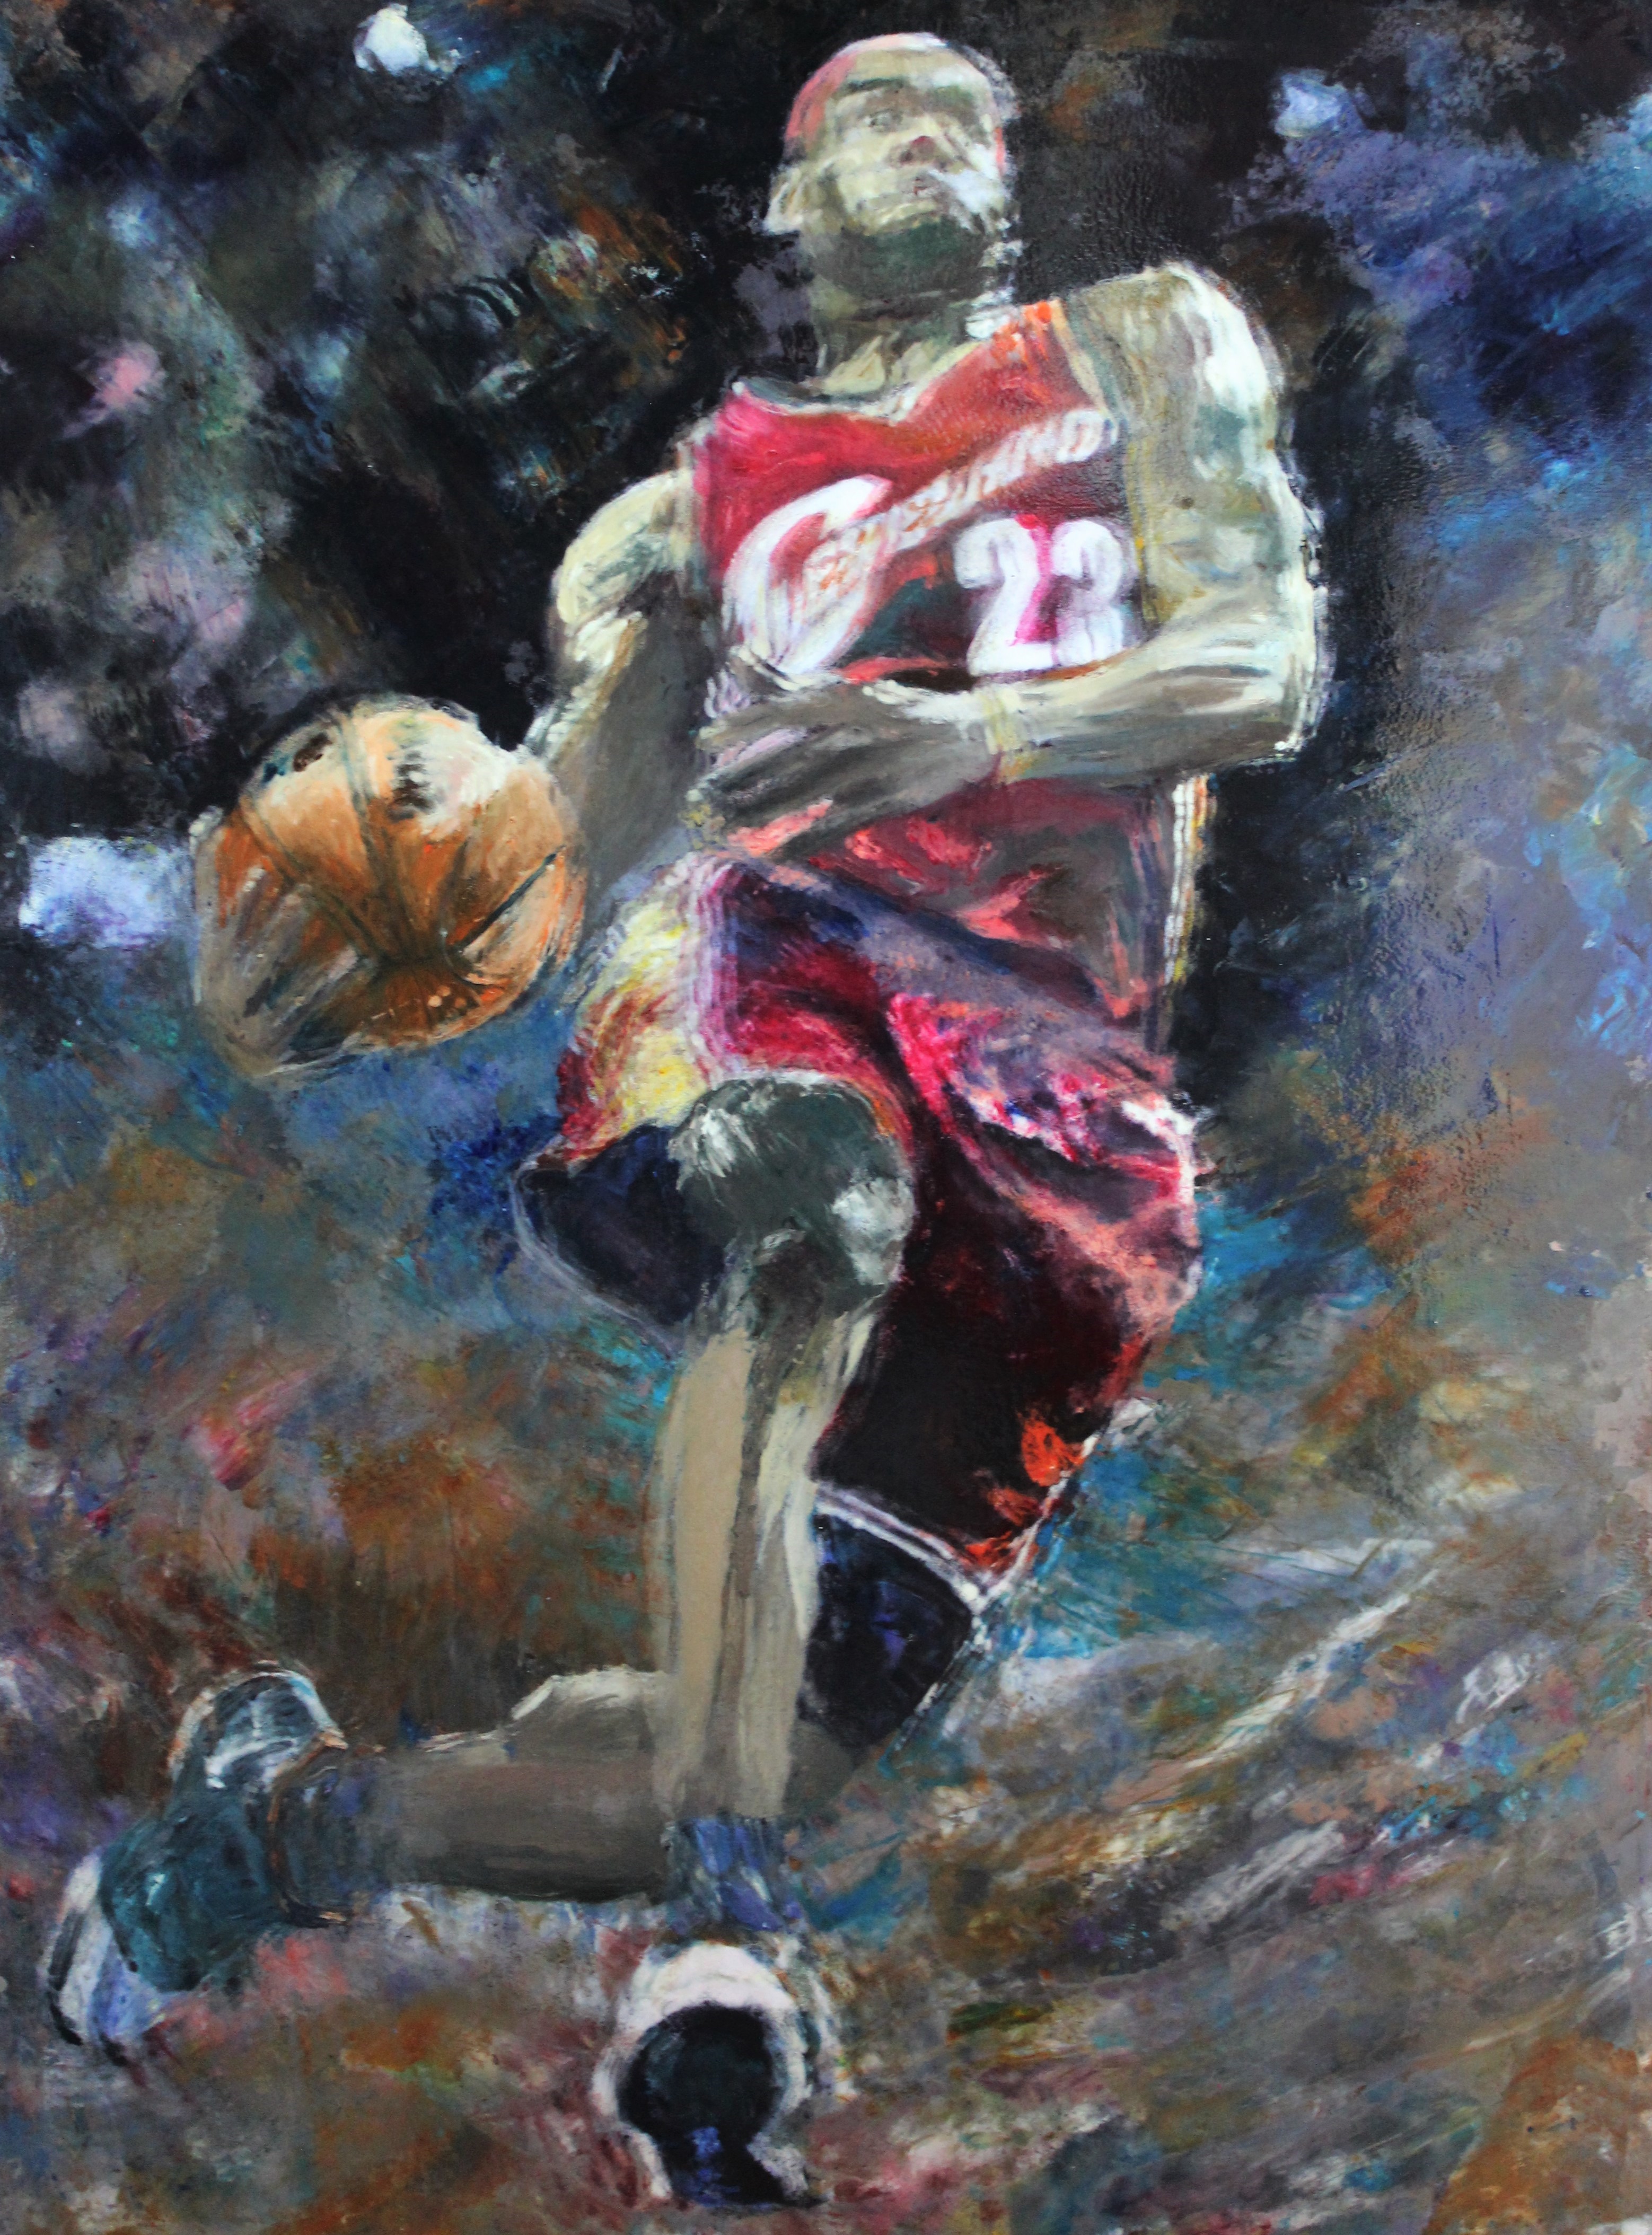 Lebron “King” James, Game 7 NBA Championships